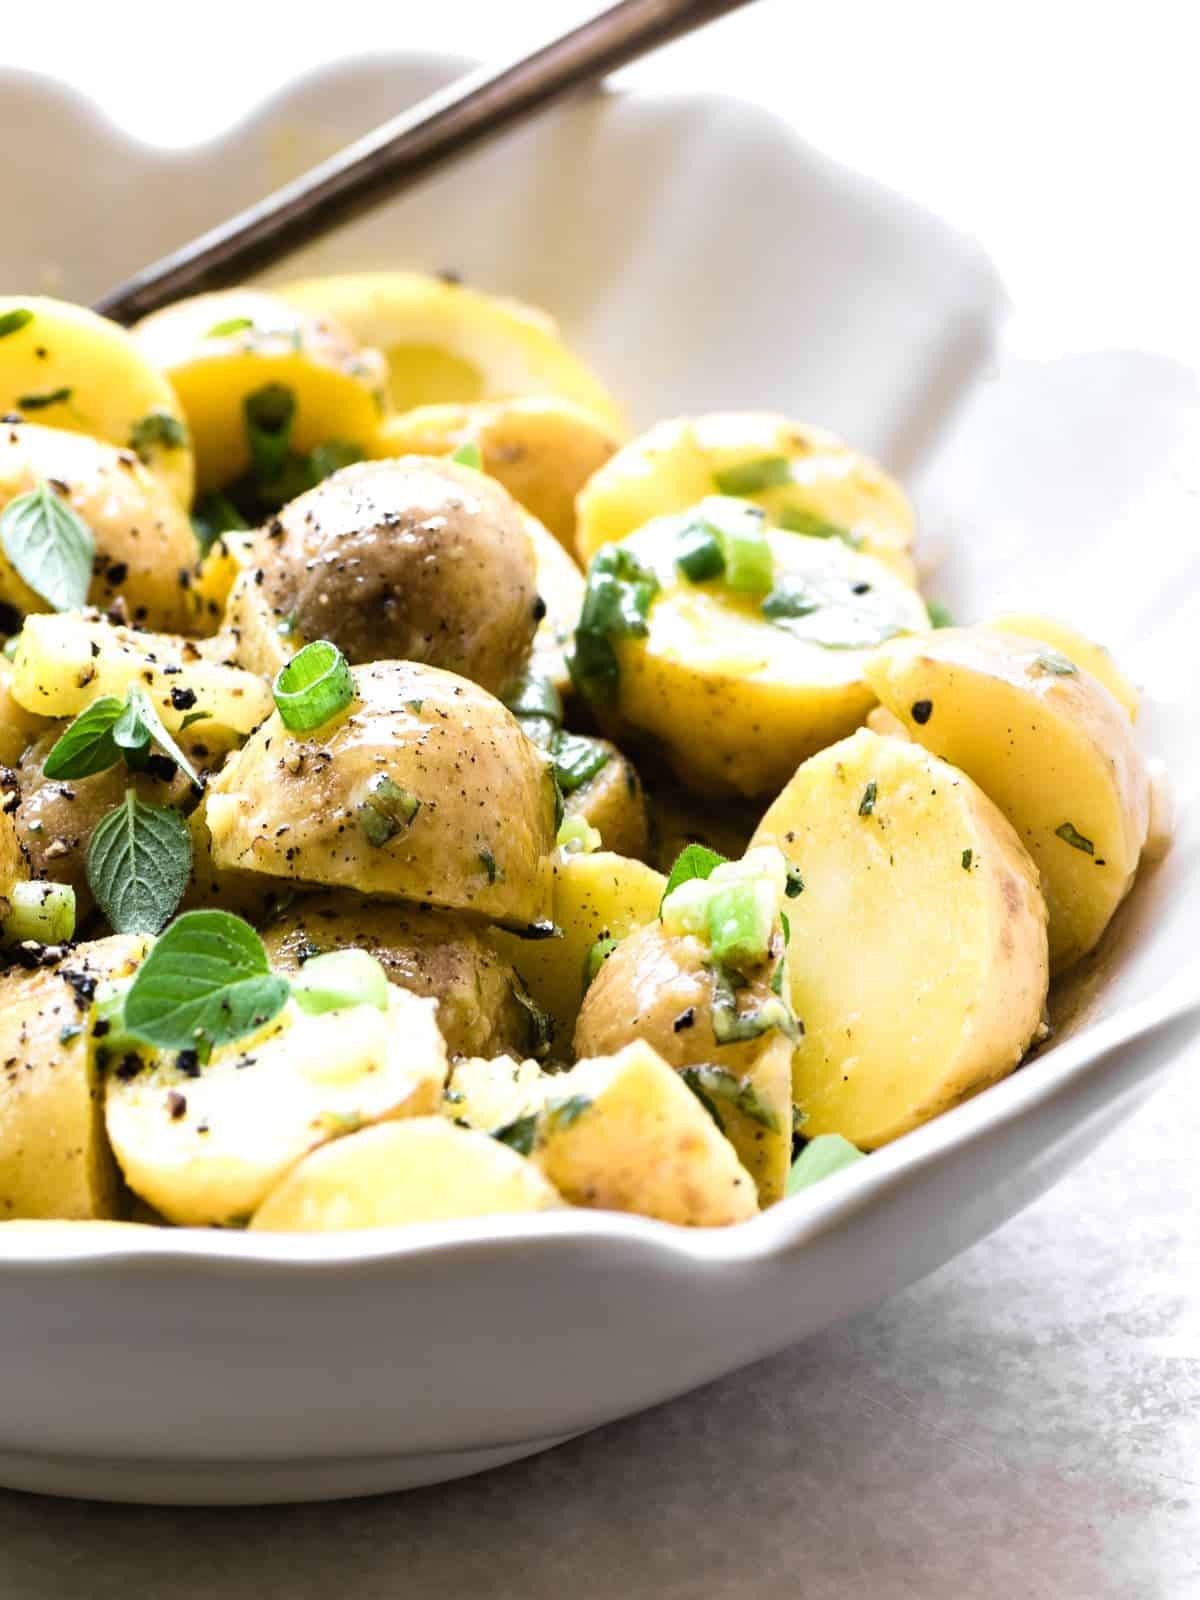 Greek lemon potato salad in a white bowl with a salad server